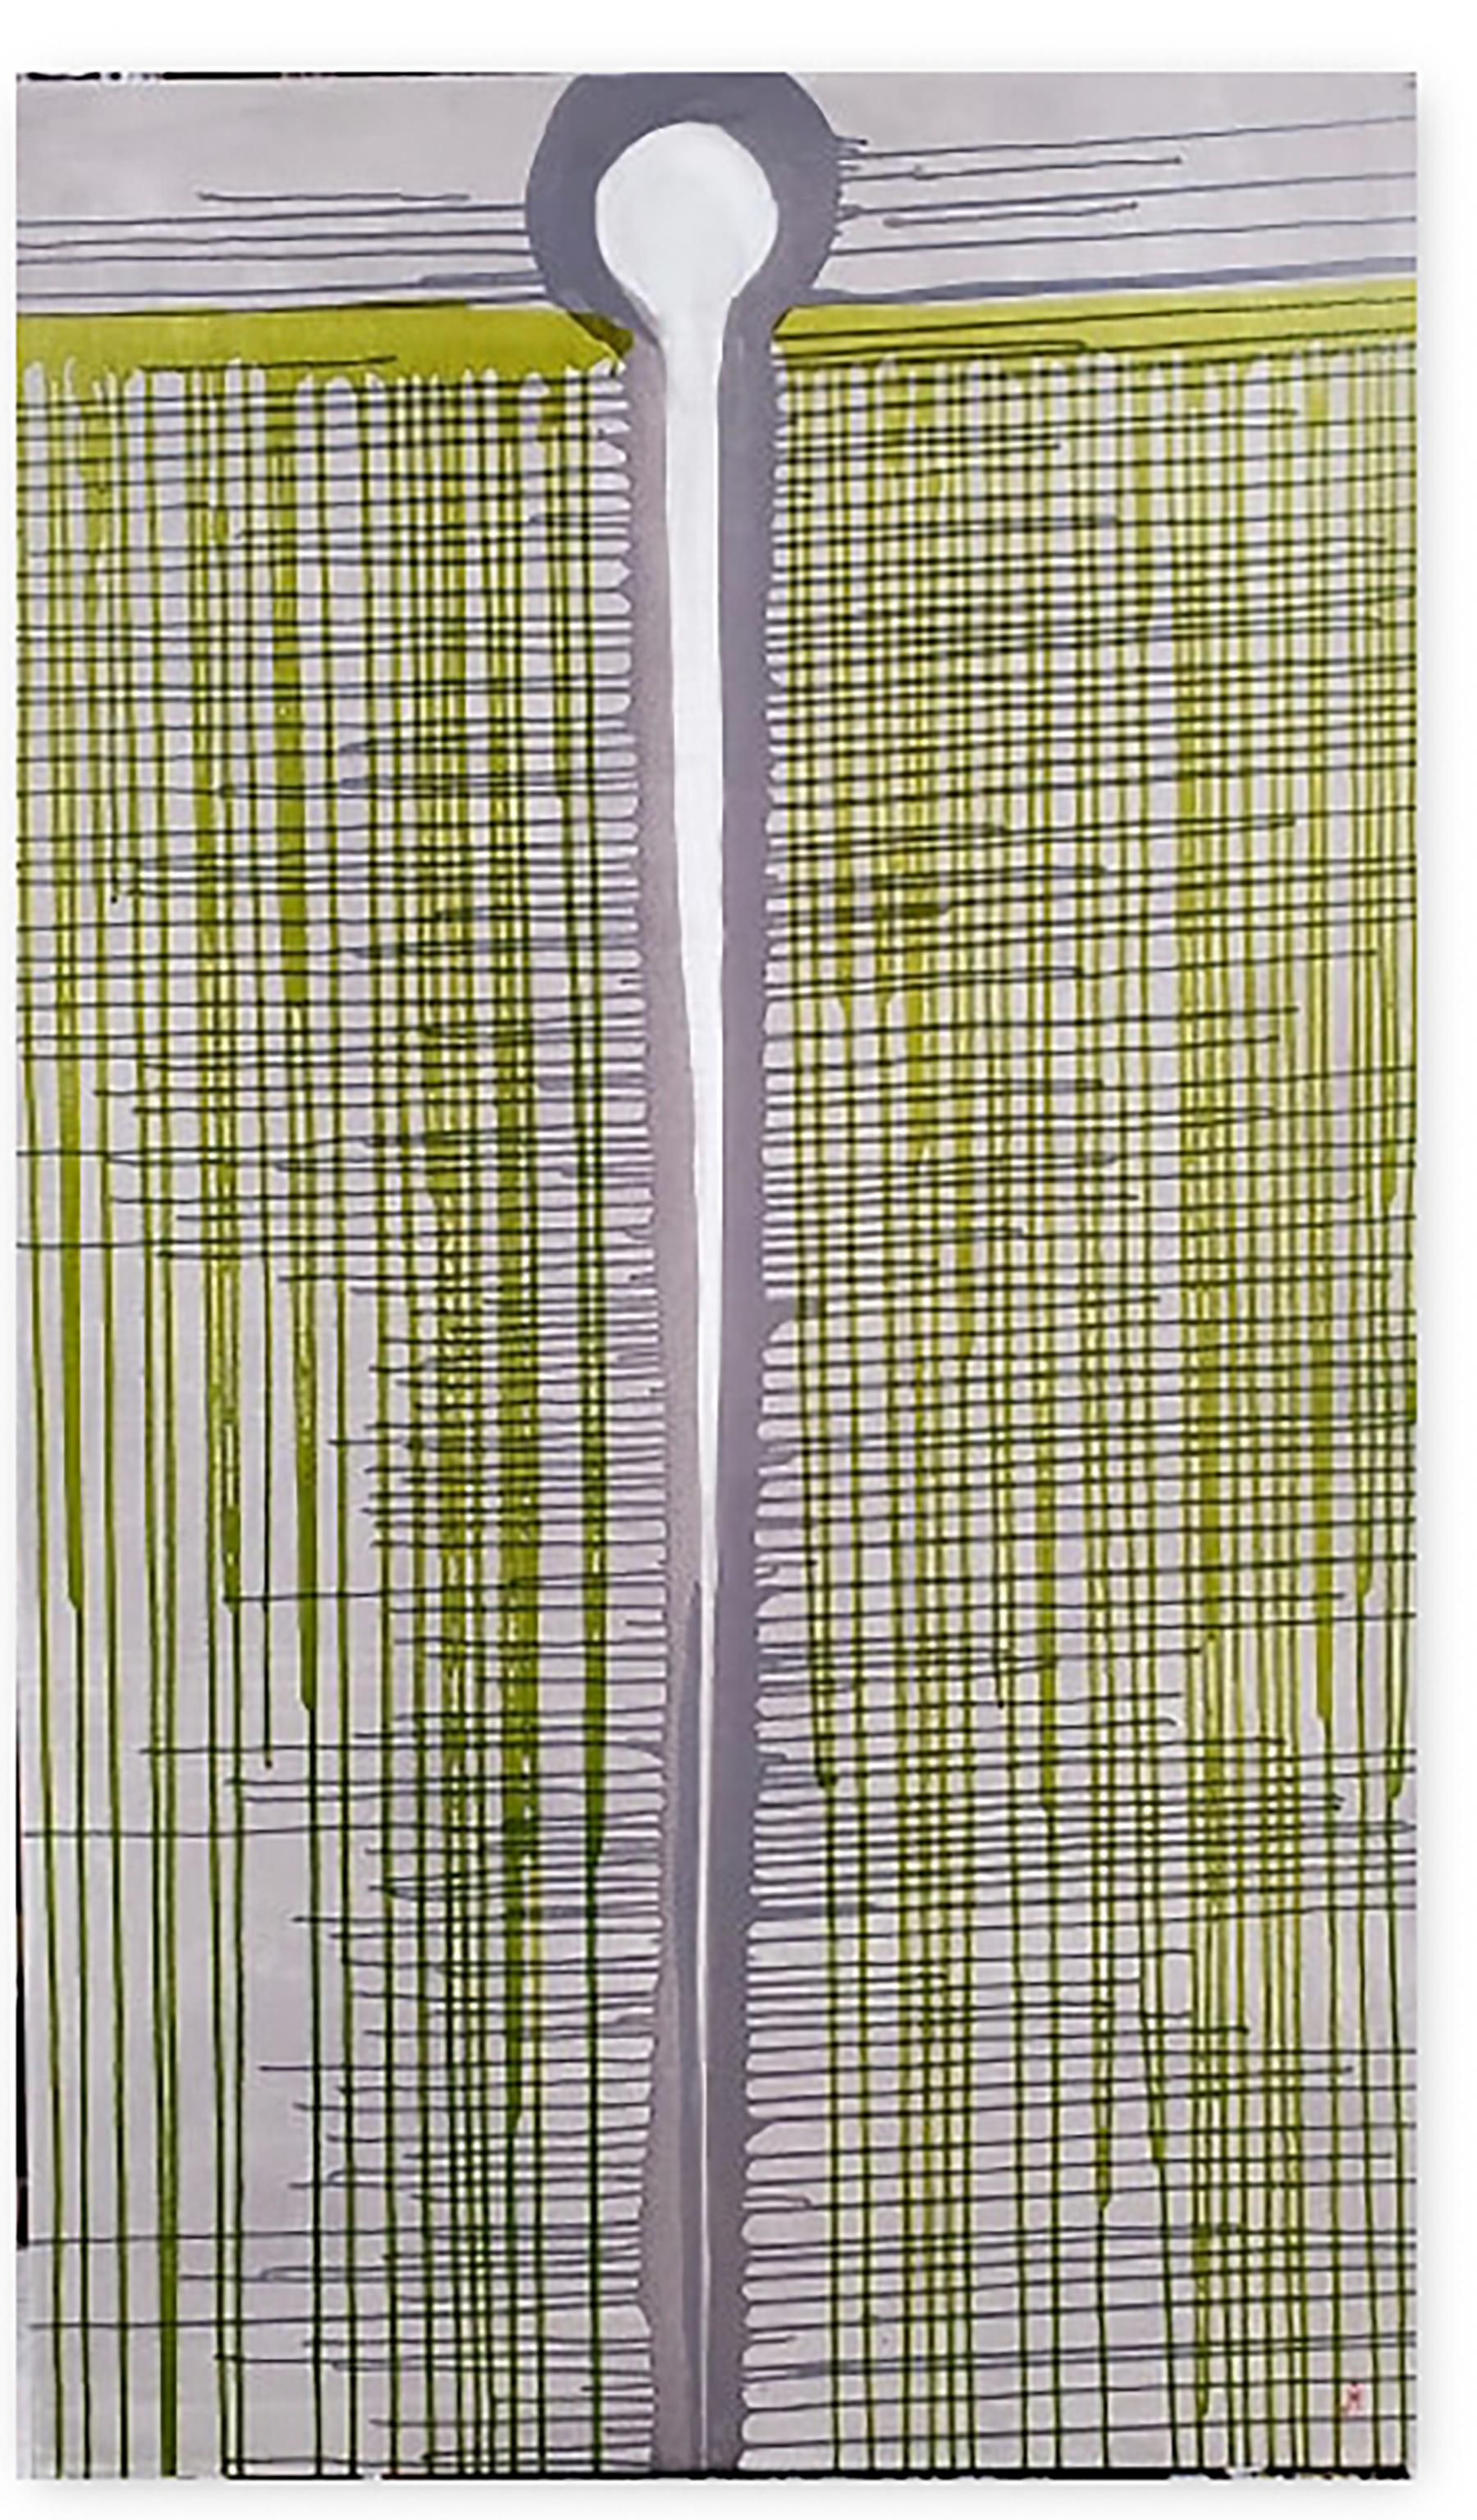 J. Oscar Molina Abstract Painting - Needle & Thread II